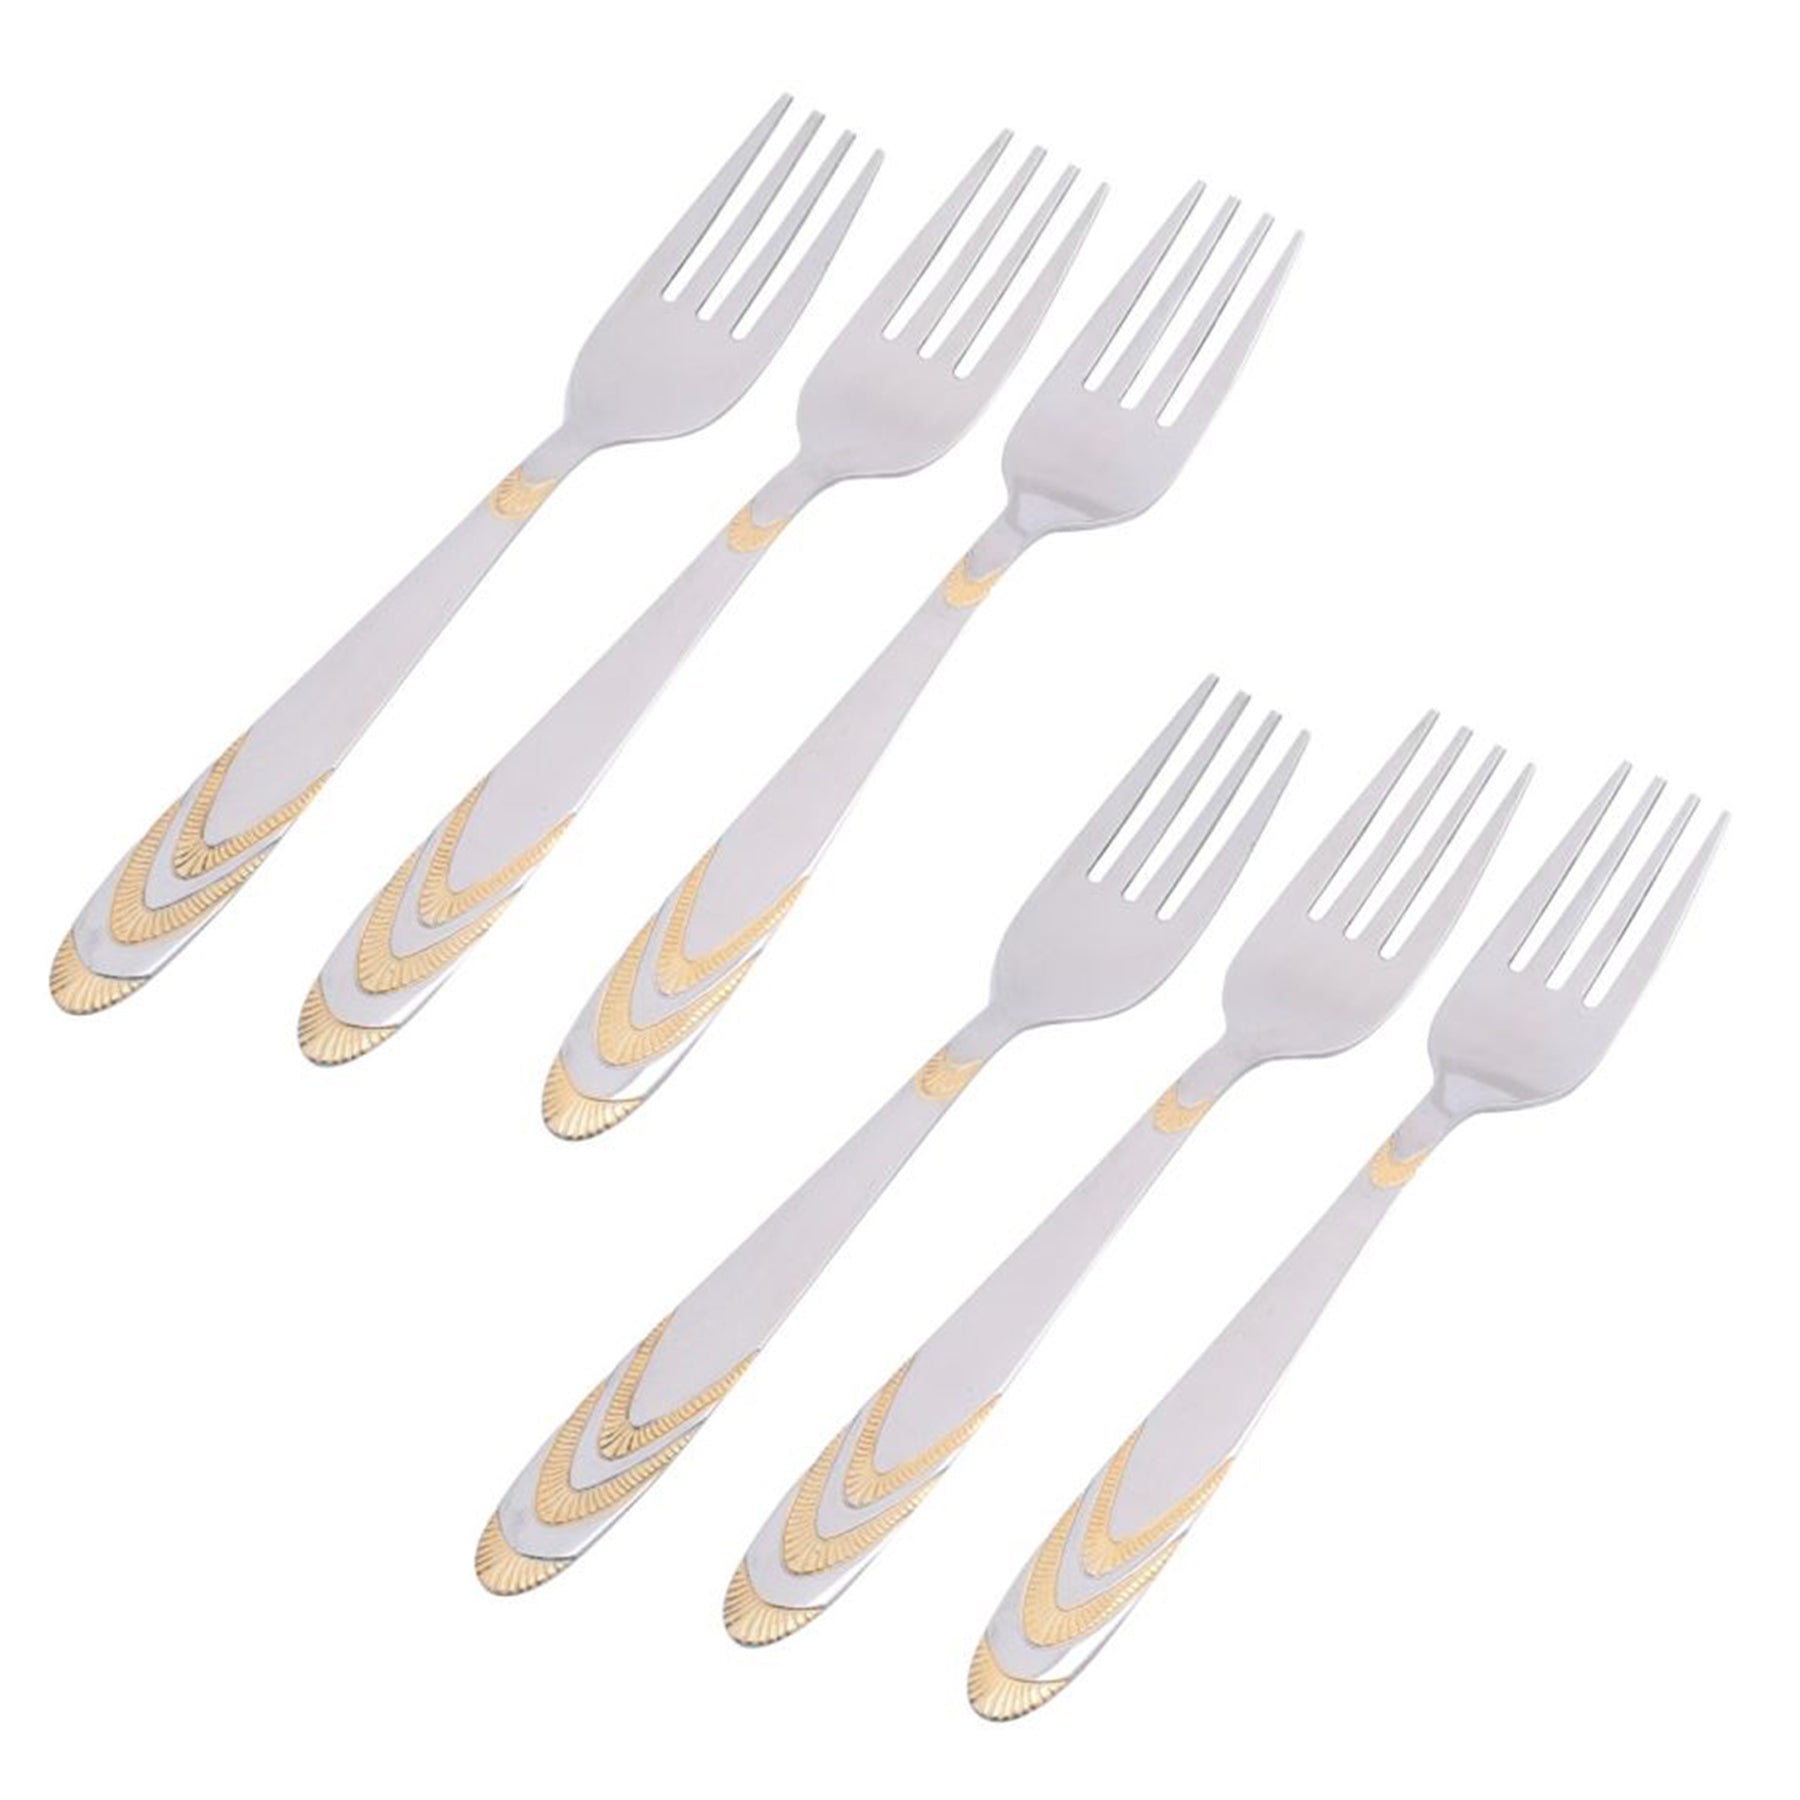 Dinner Forks 6 PCS Set- Silver & Gold